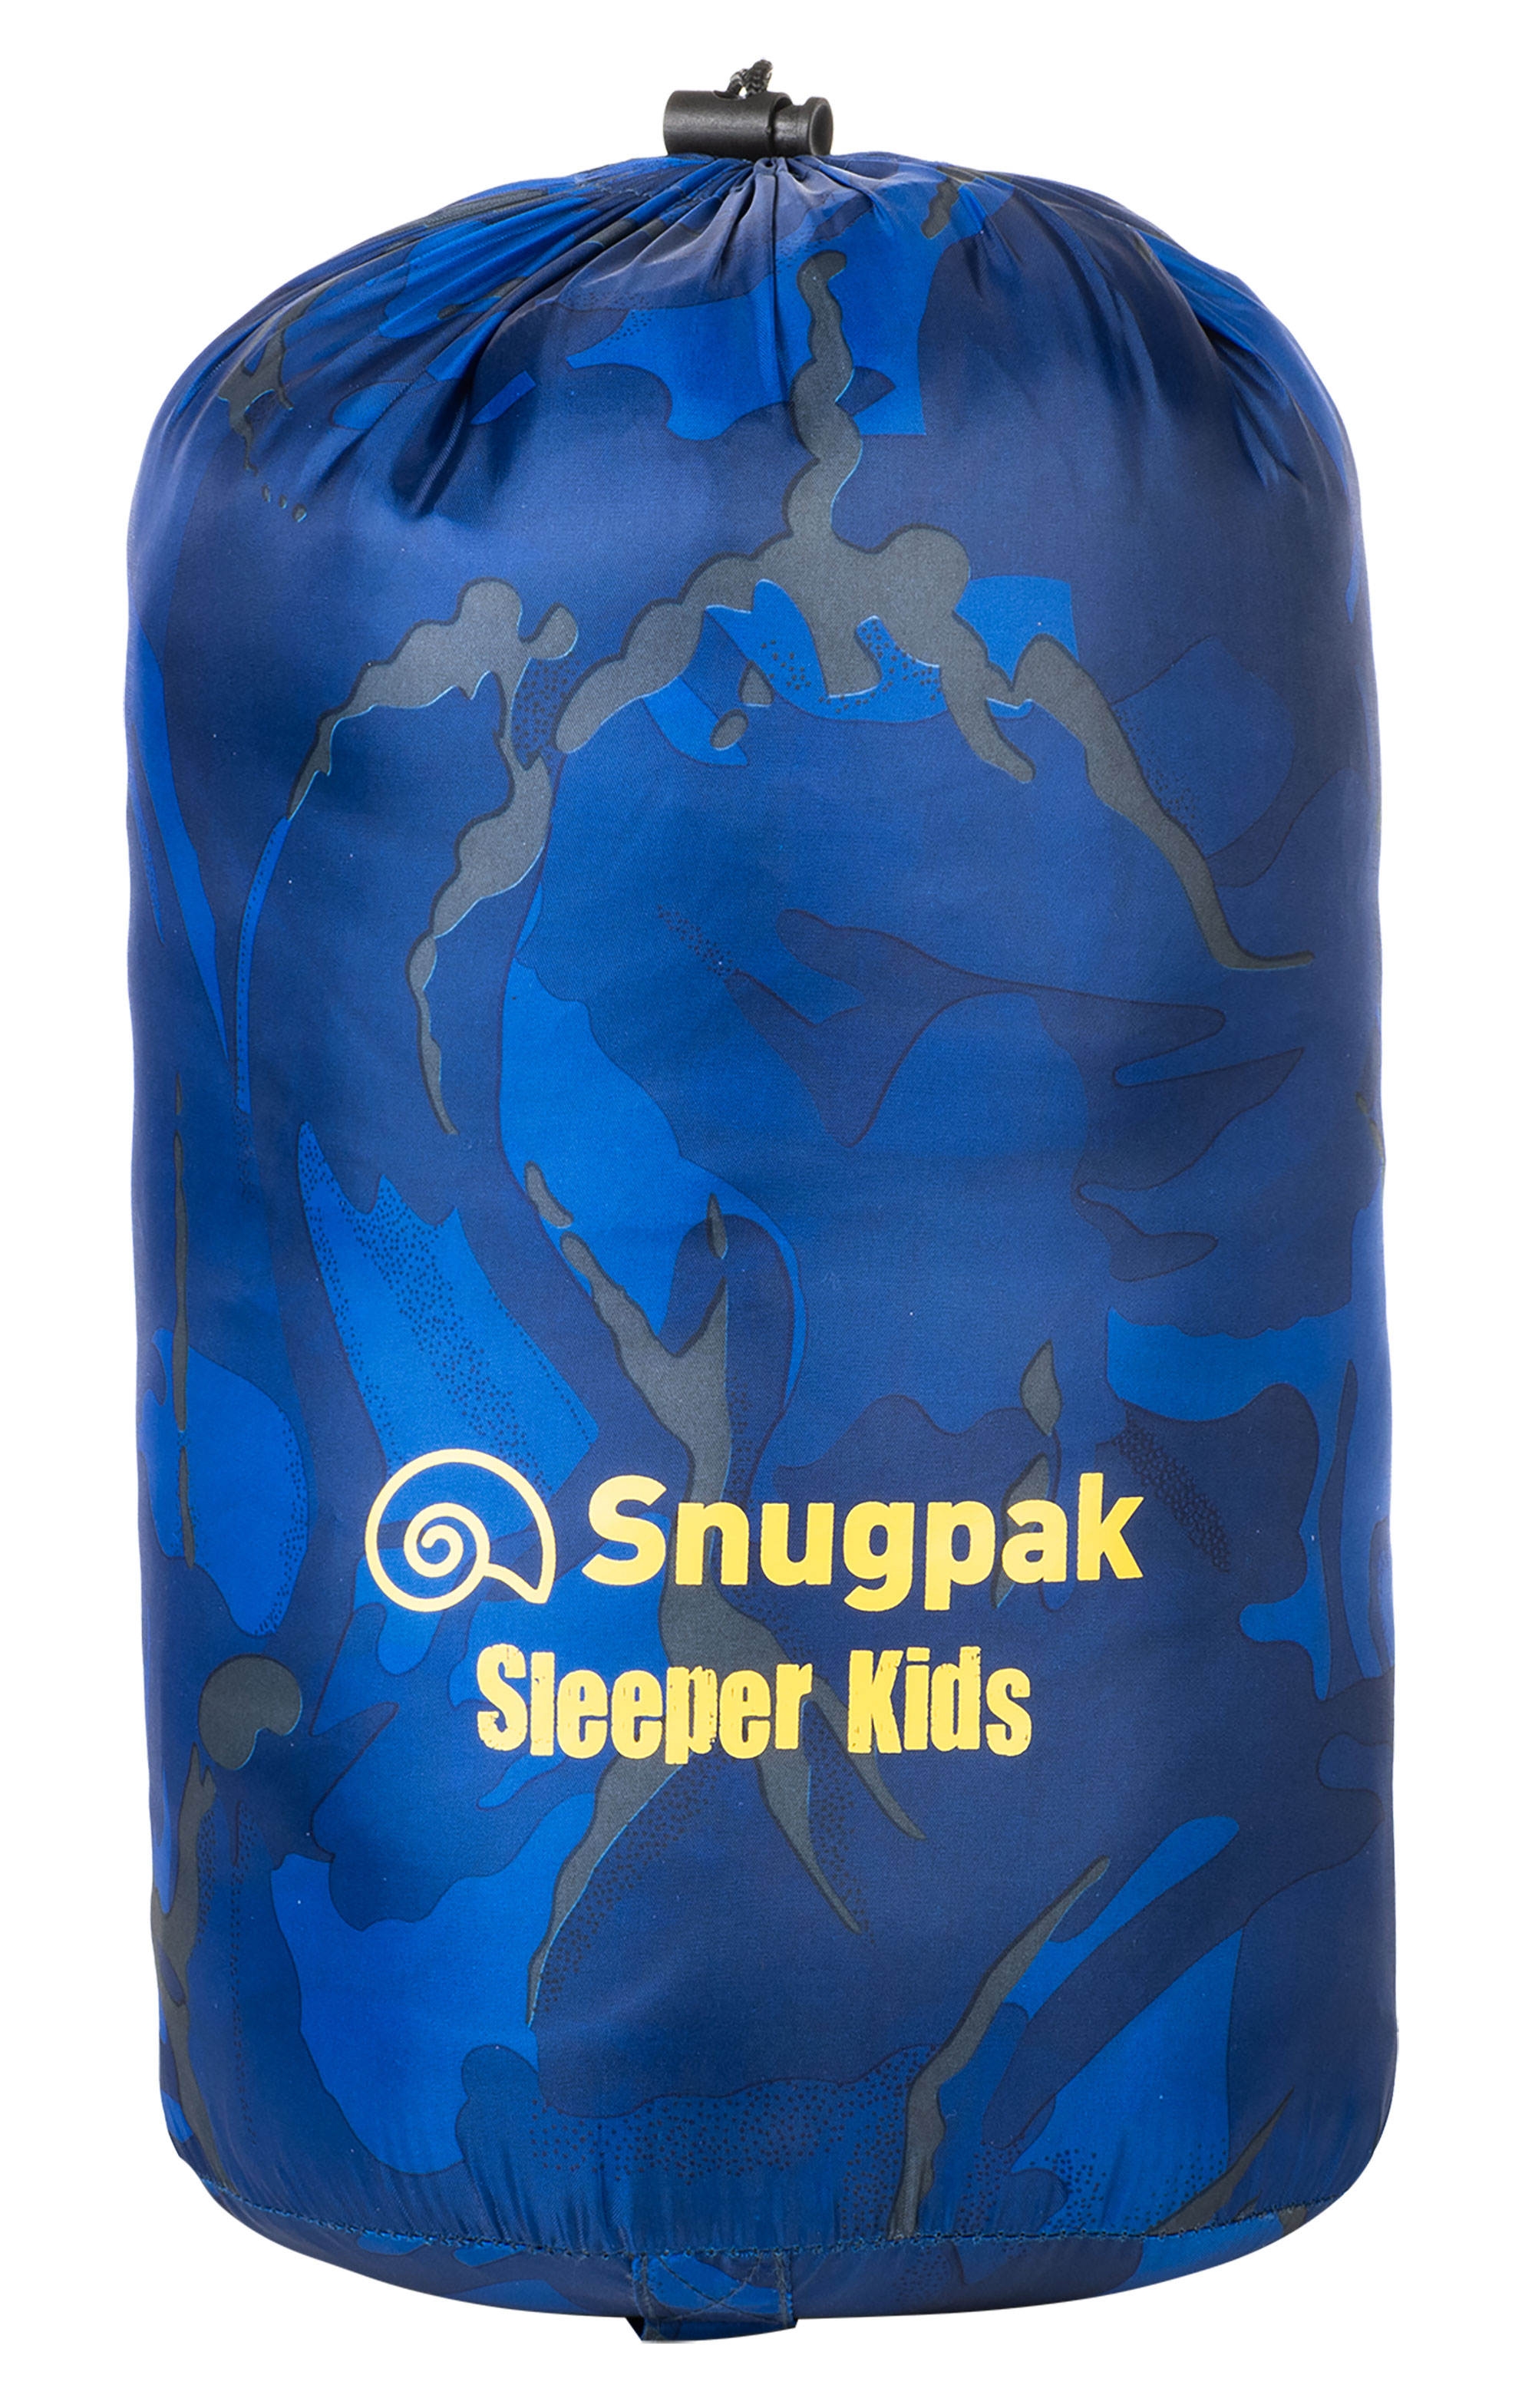 Snugpak Sleeper Kids WGTE sleeping bag